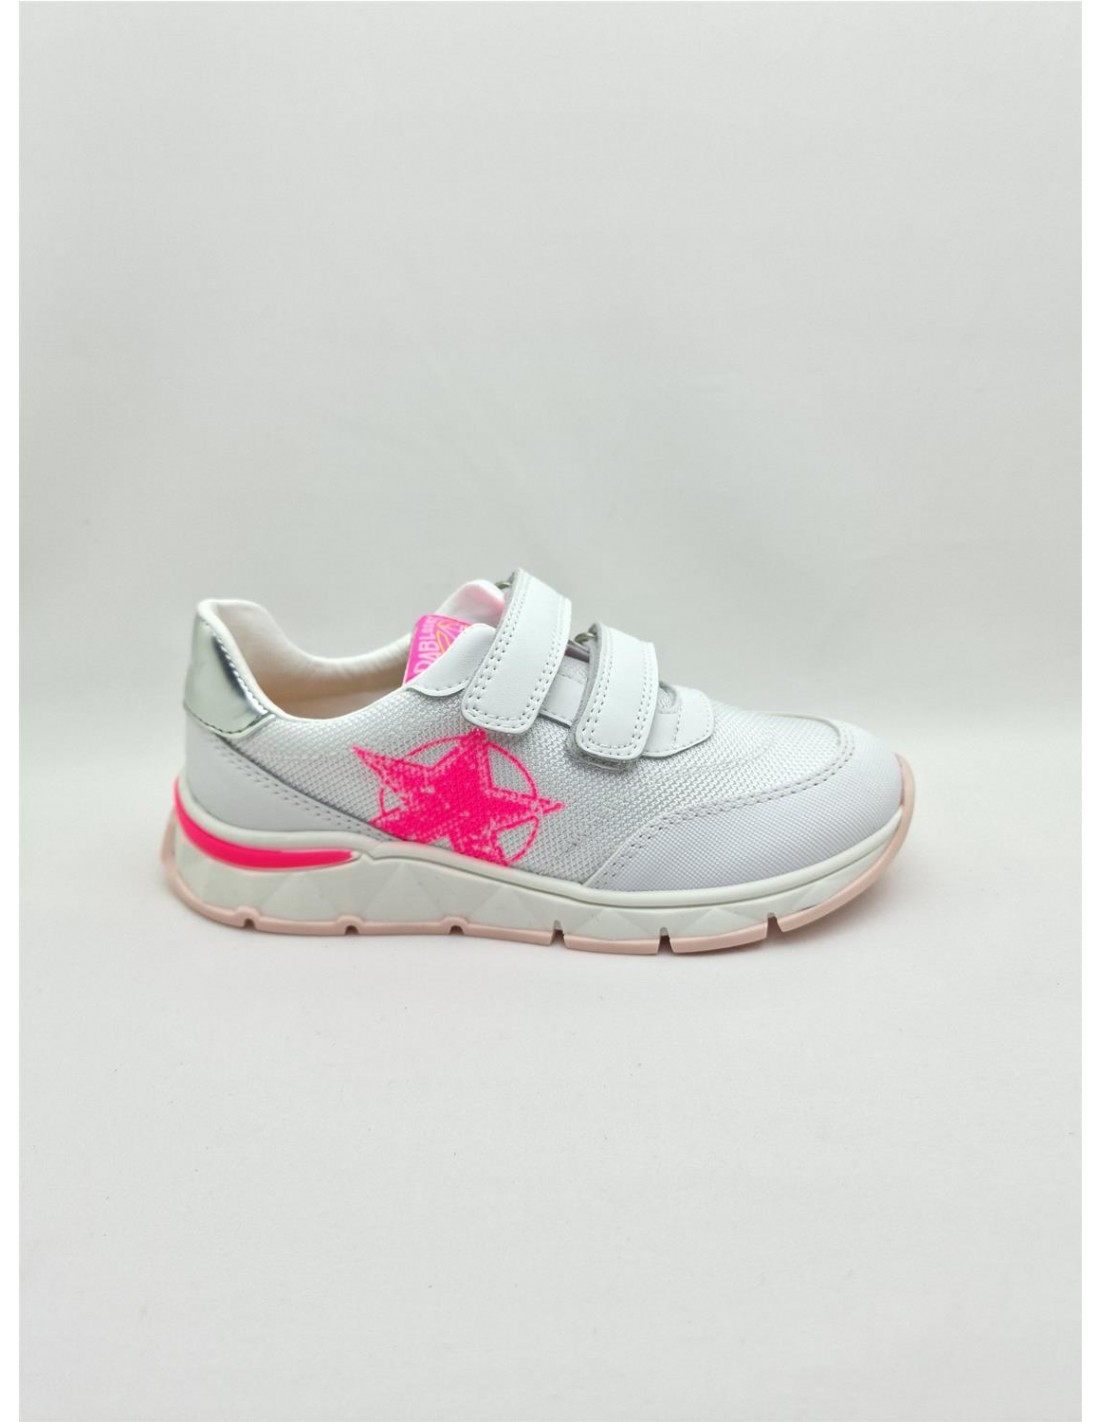 Кроссовки Pablosky для девочек, размер 29, белые с розовым принтом, 298707 белые кроссовки geox для девочки 35